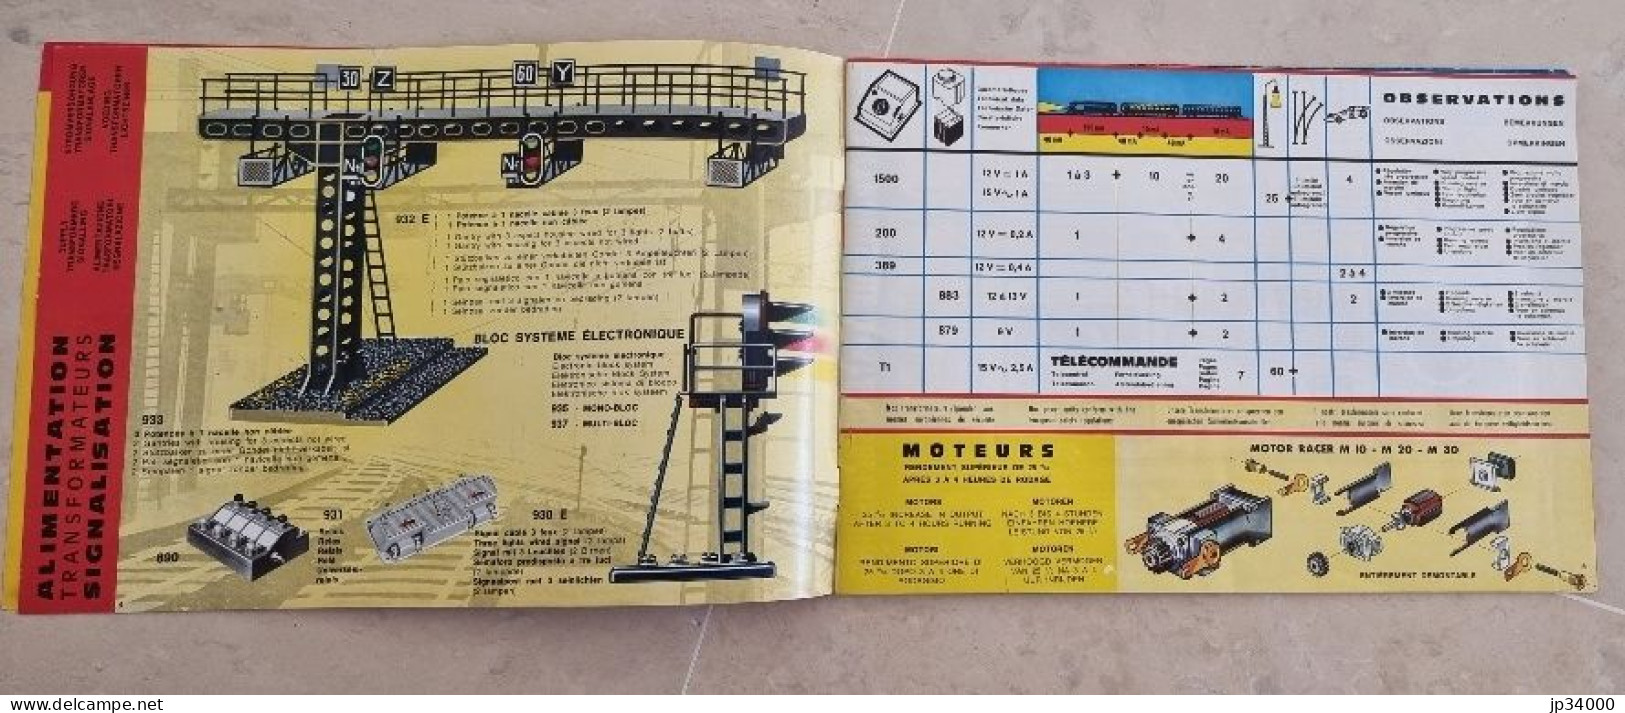 TELECOMMANDE ELECTRONIQUE (Jouef HO) Complet 32 Pages, 1969-70 (Trains Electriques) - Literatura & DVD